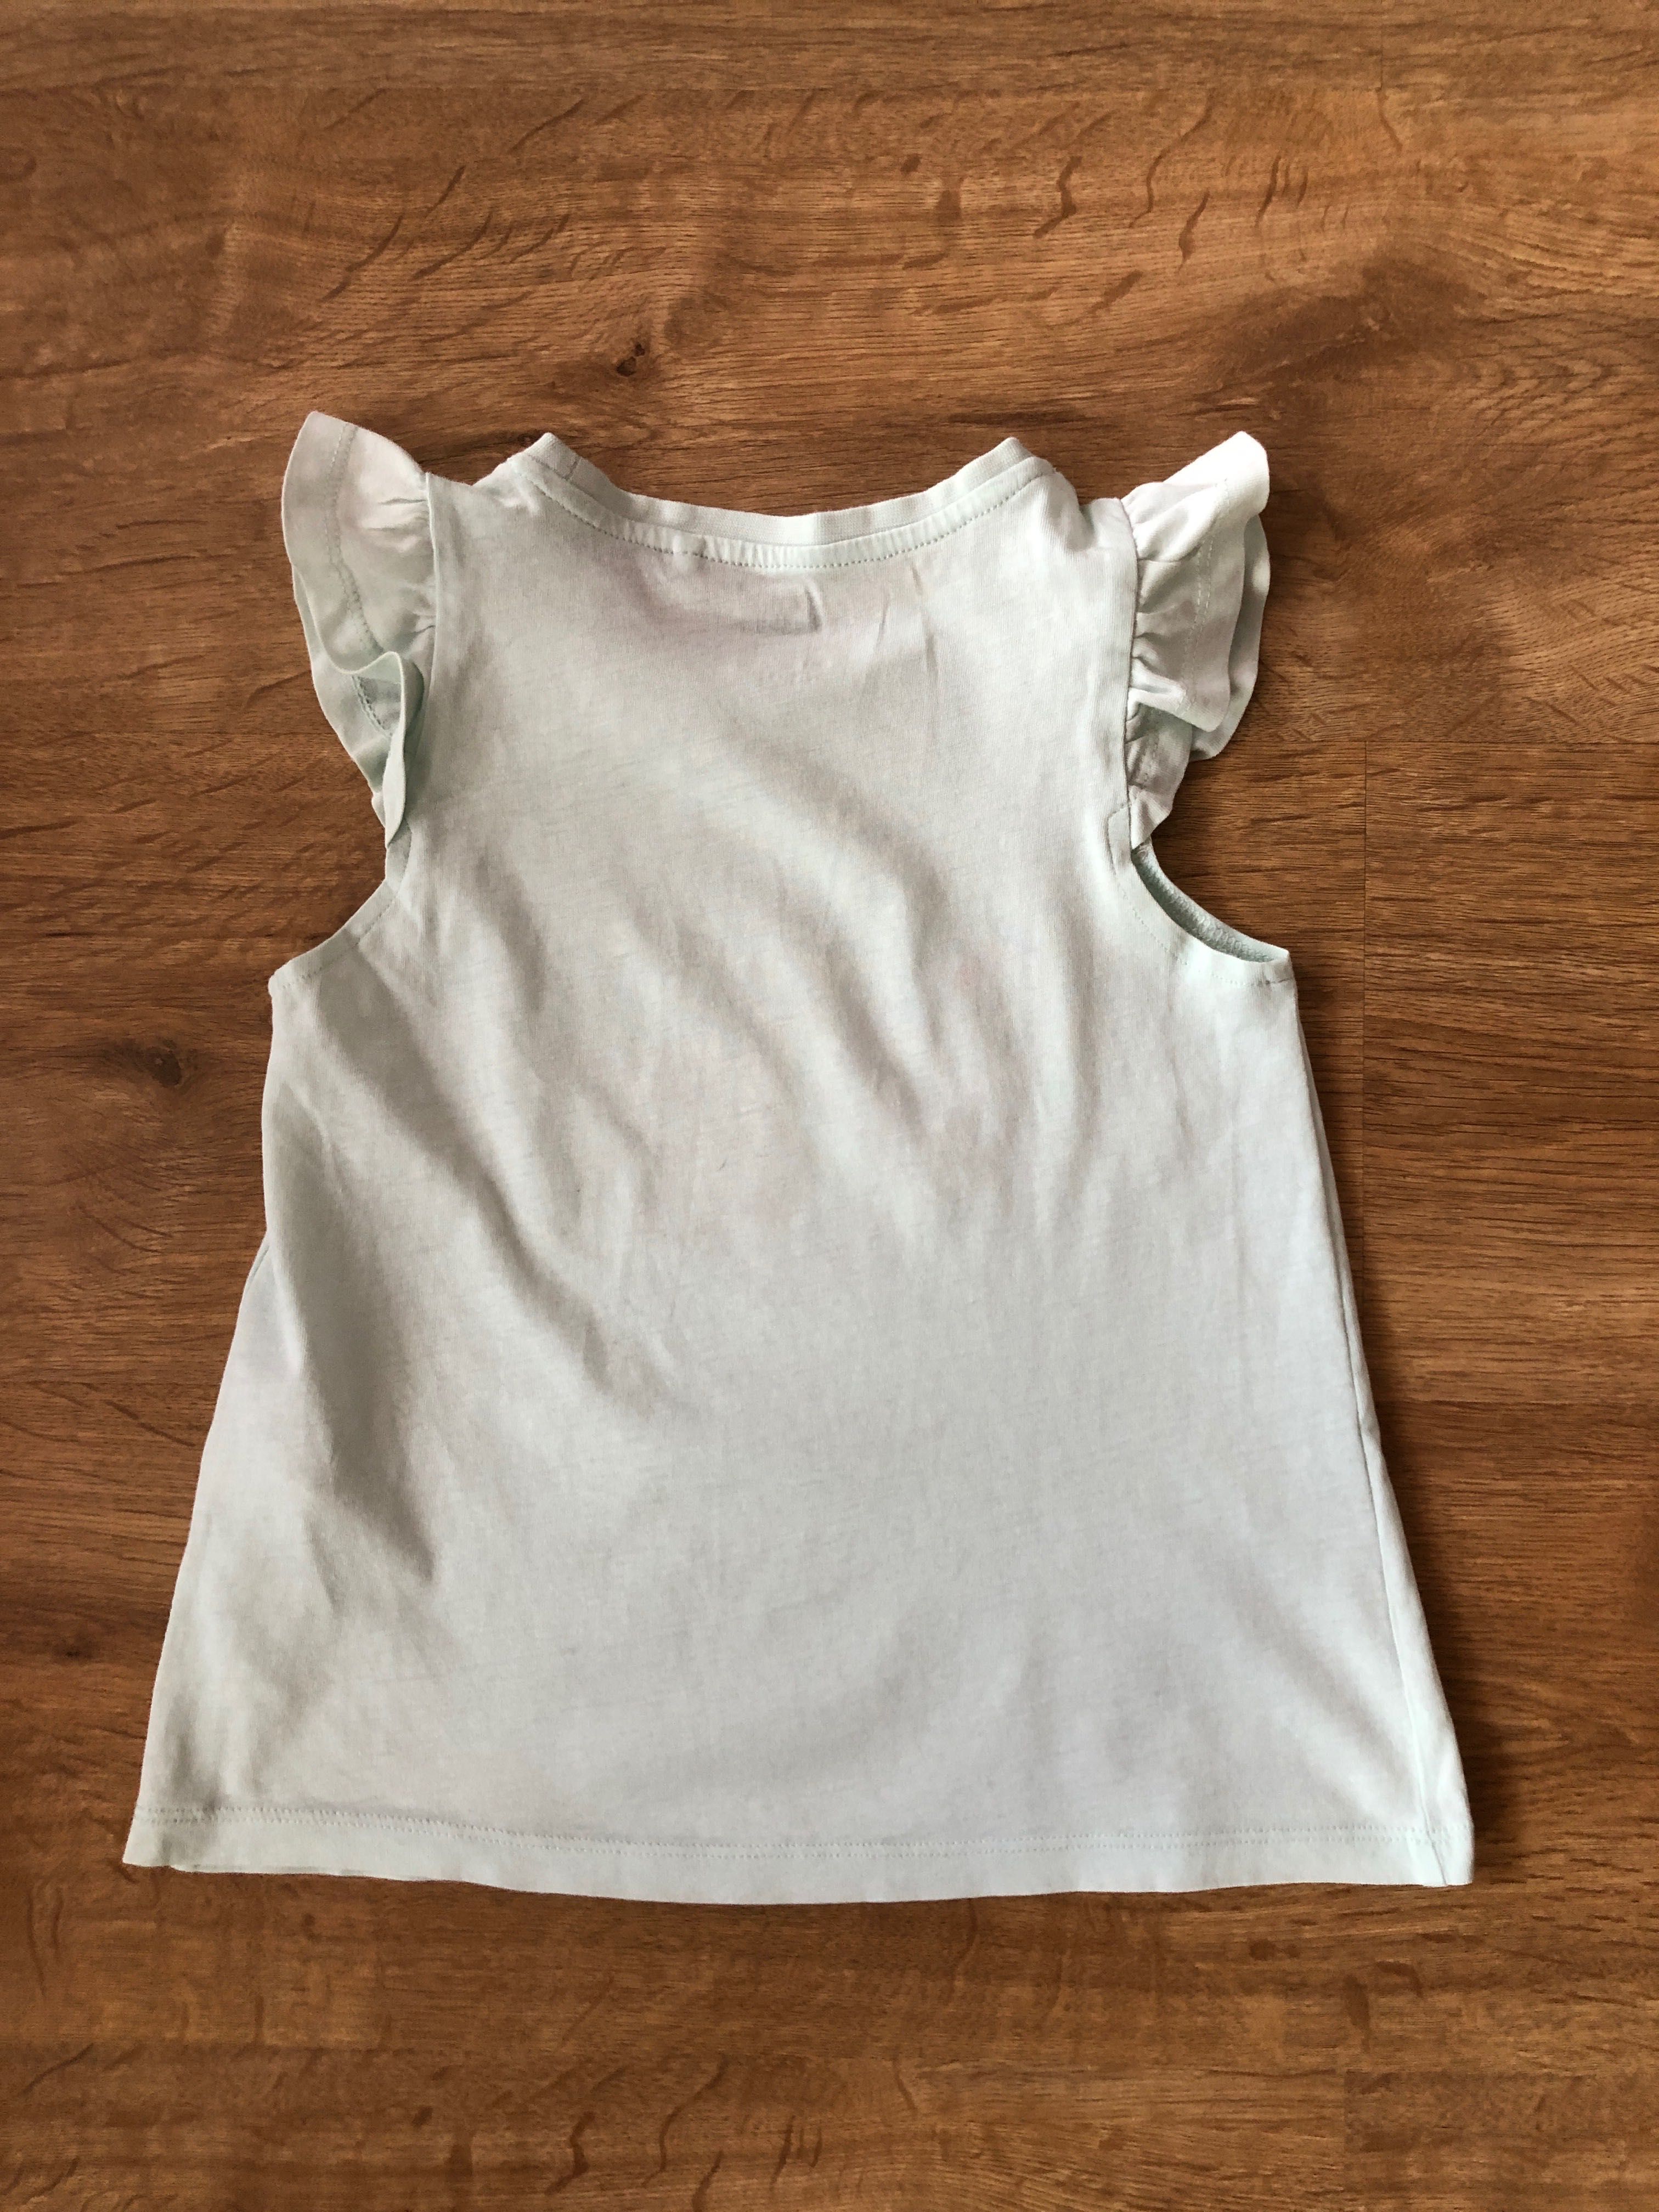 T-shirt/koszulka dla dziewczynki krótki rękaw miętowa, roz 110, Sinsay